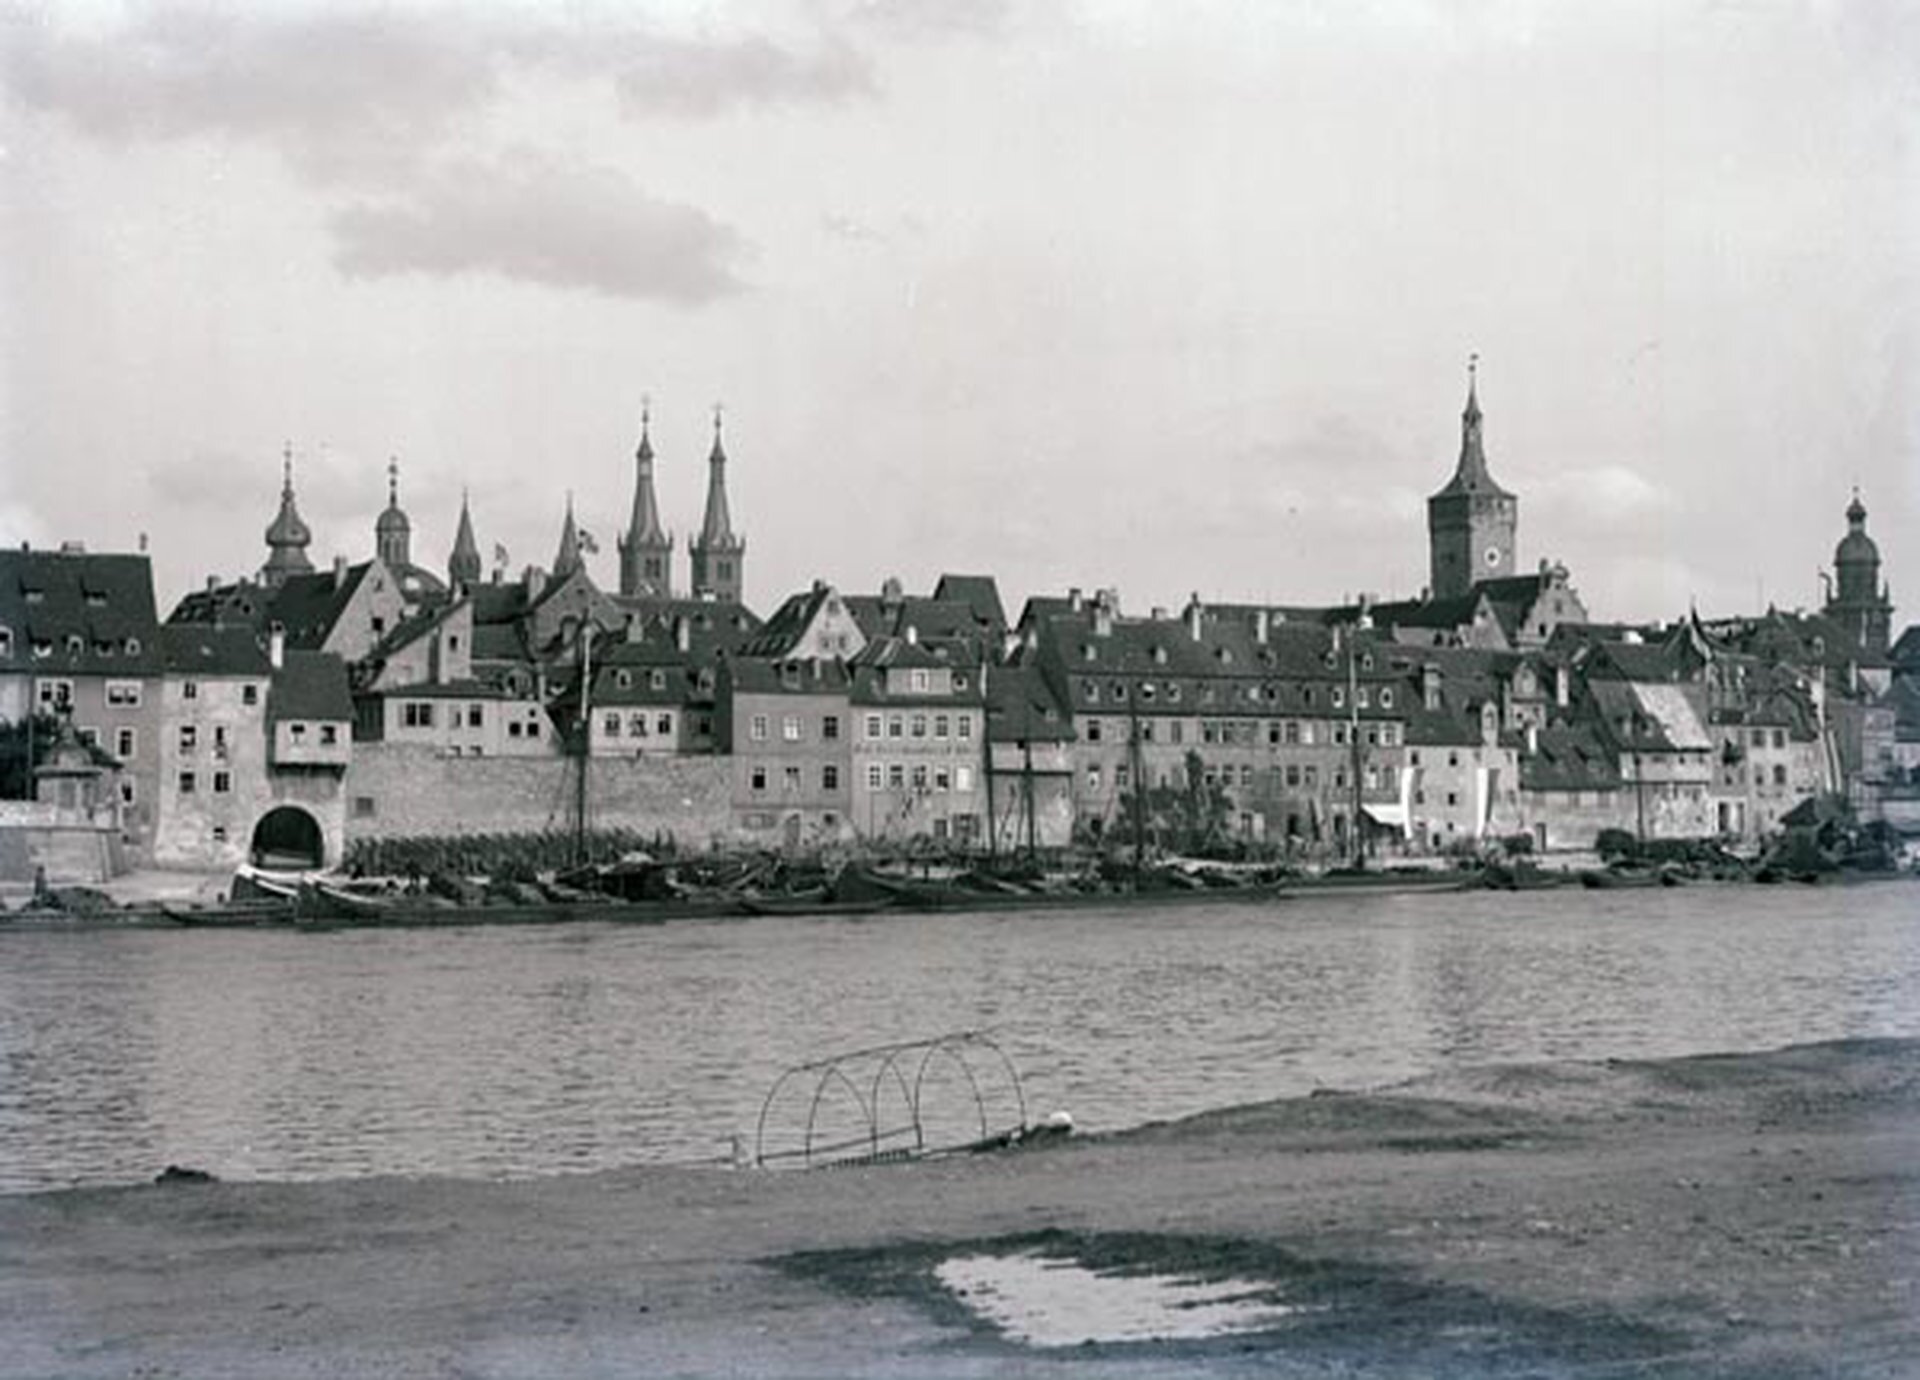 Rys. 2. Zdjęcie przedstawia rzekę znajdującą się na pierwszym planie. Za rzeką widać zabytkowe, stare kamienice i kościoły z wieżami.